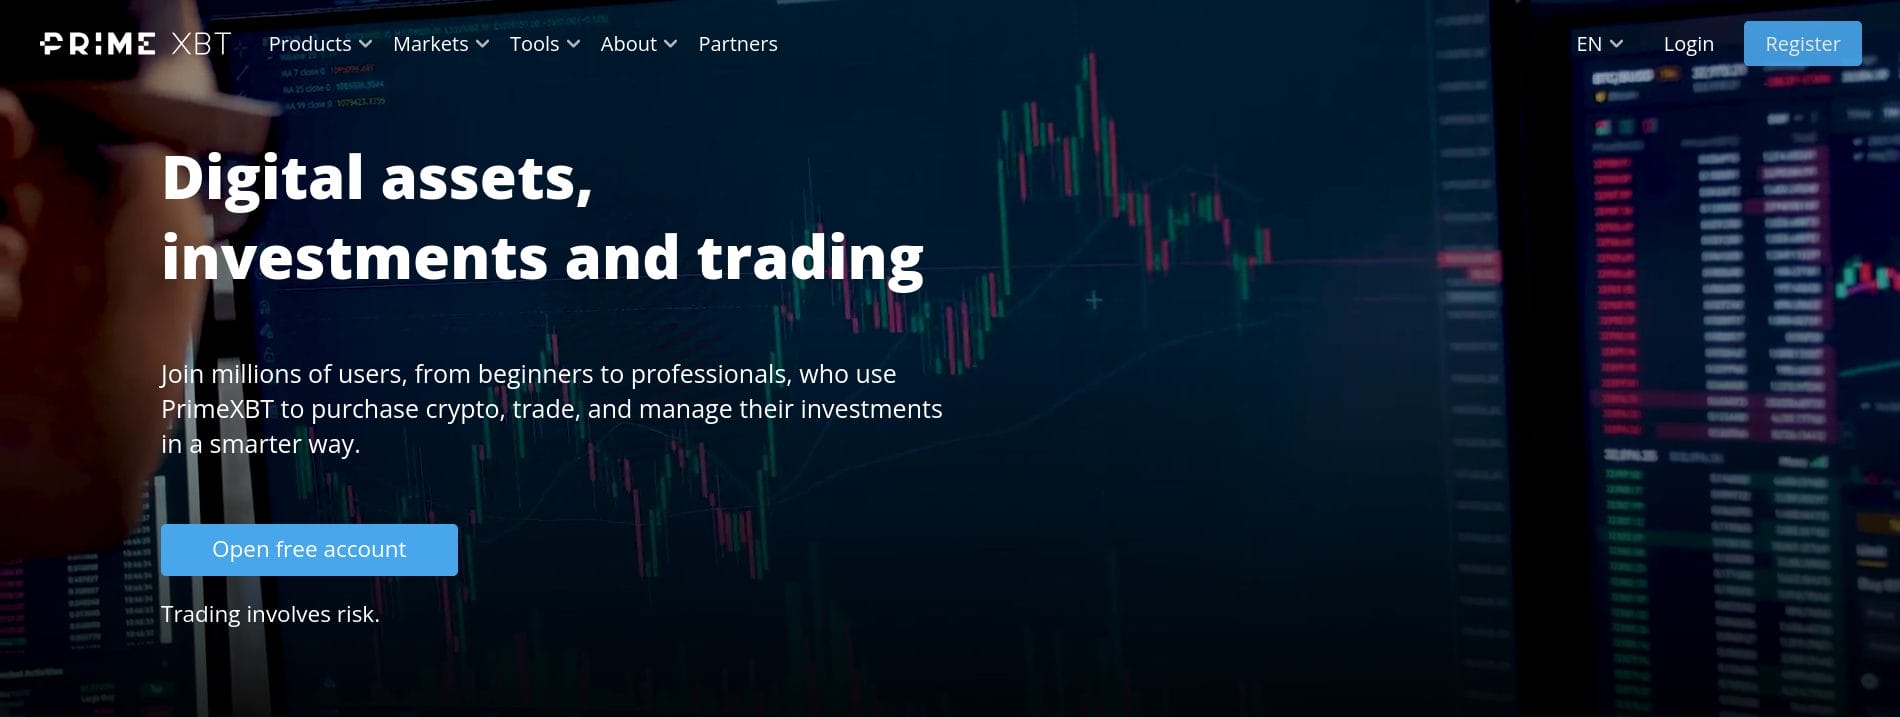 primexbt homepage